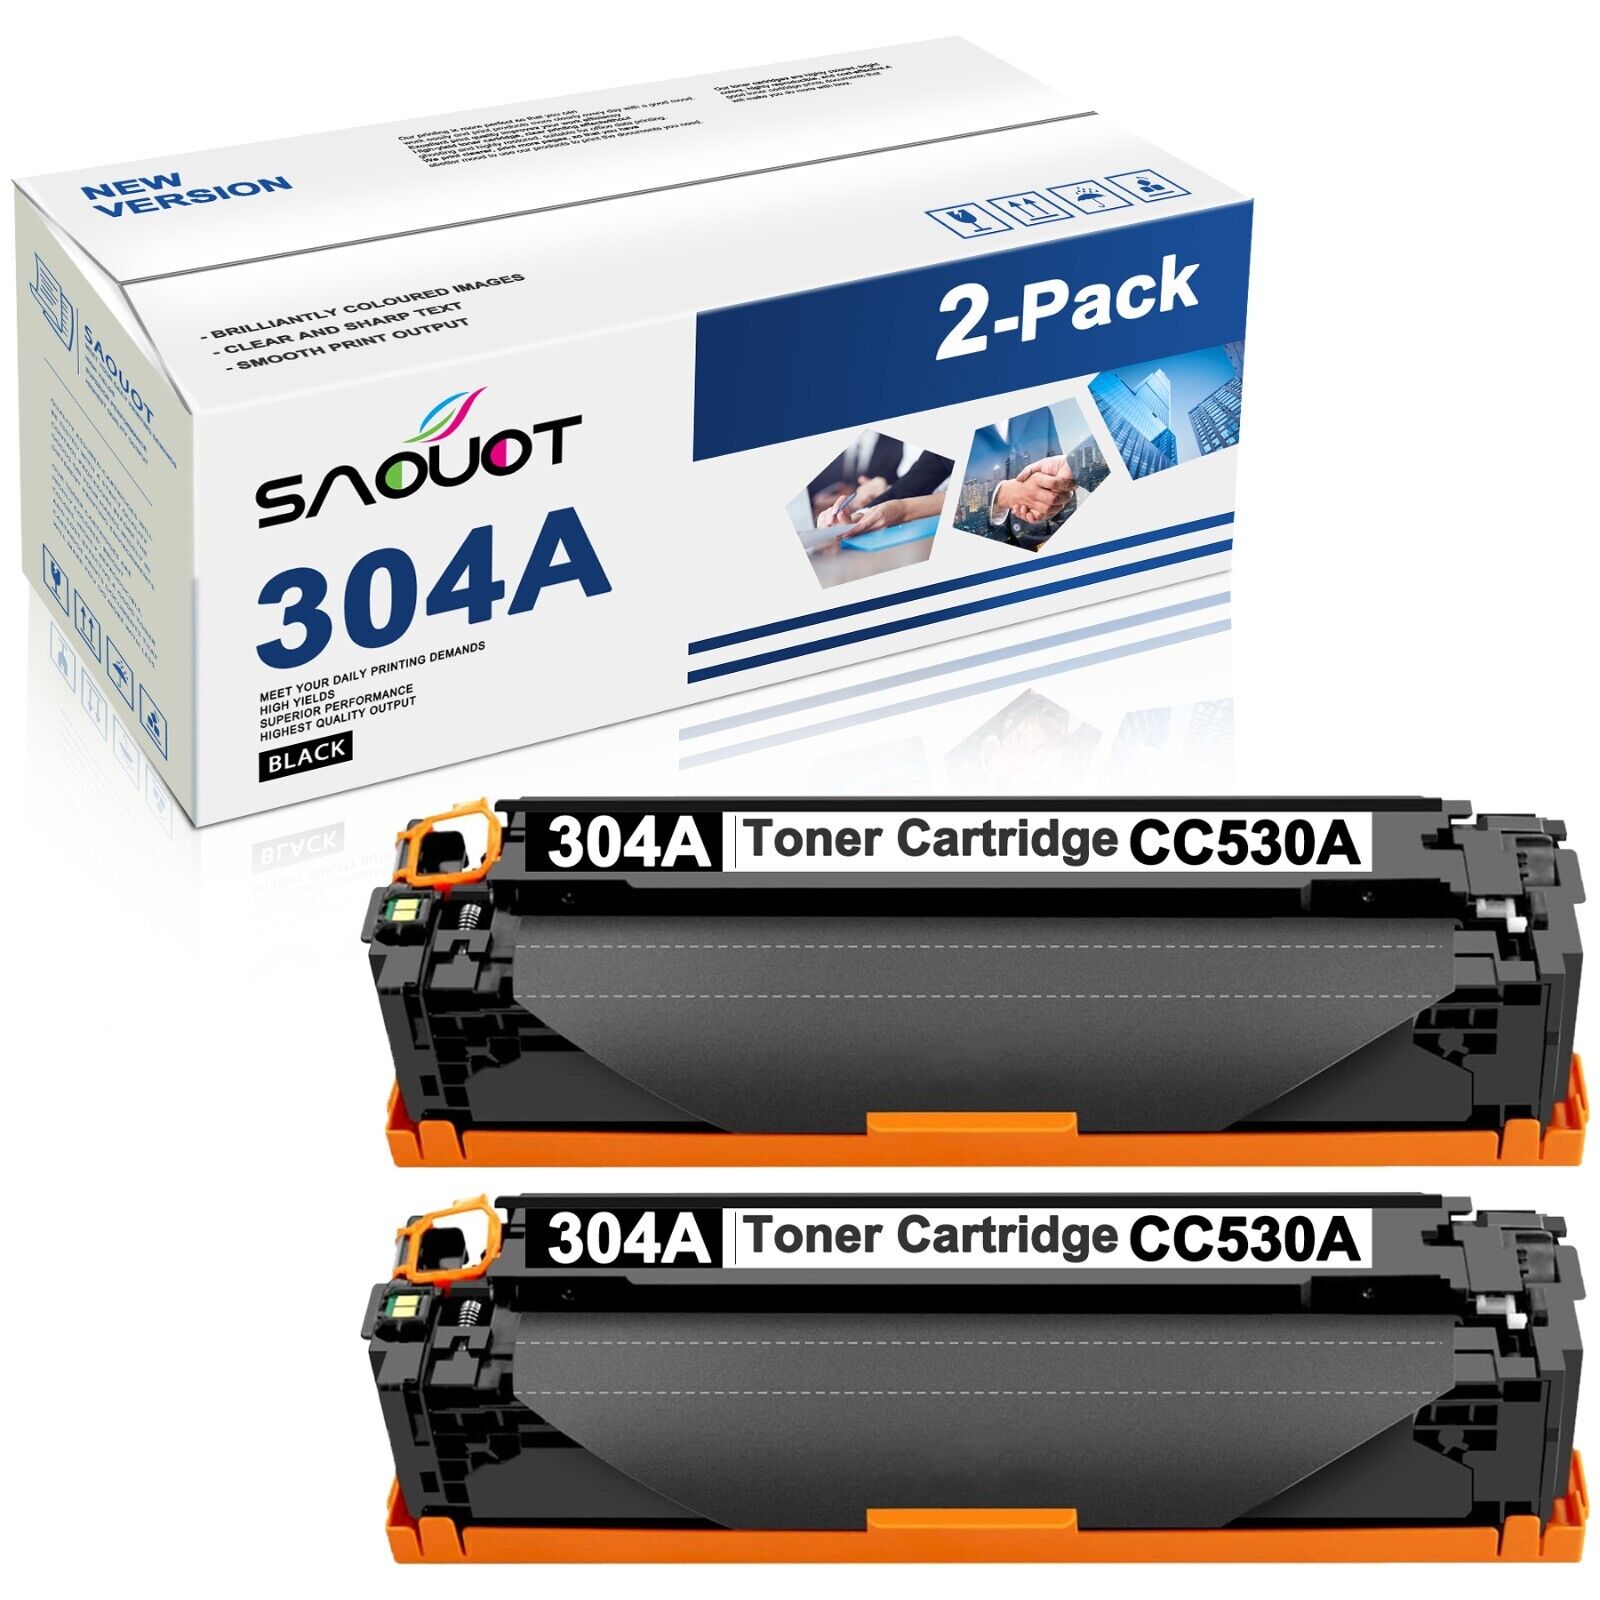 2x CC530A 304A Toner Cartridge Replacement for HP 304A Toner CM2320fxi CM2320nf